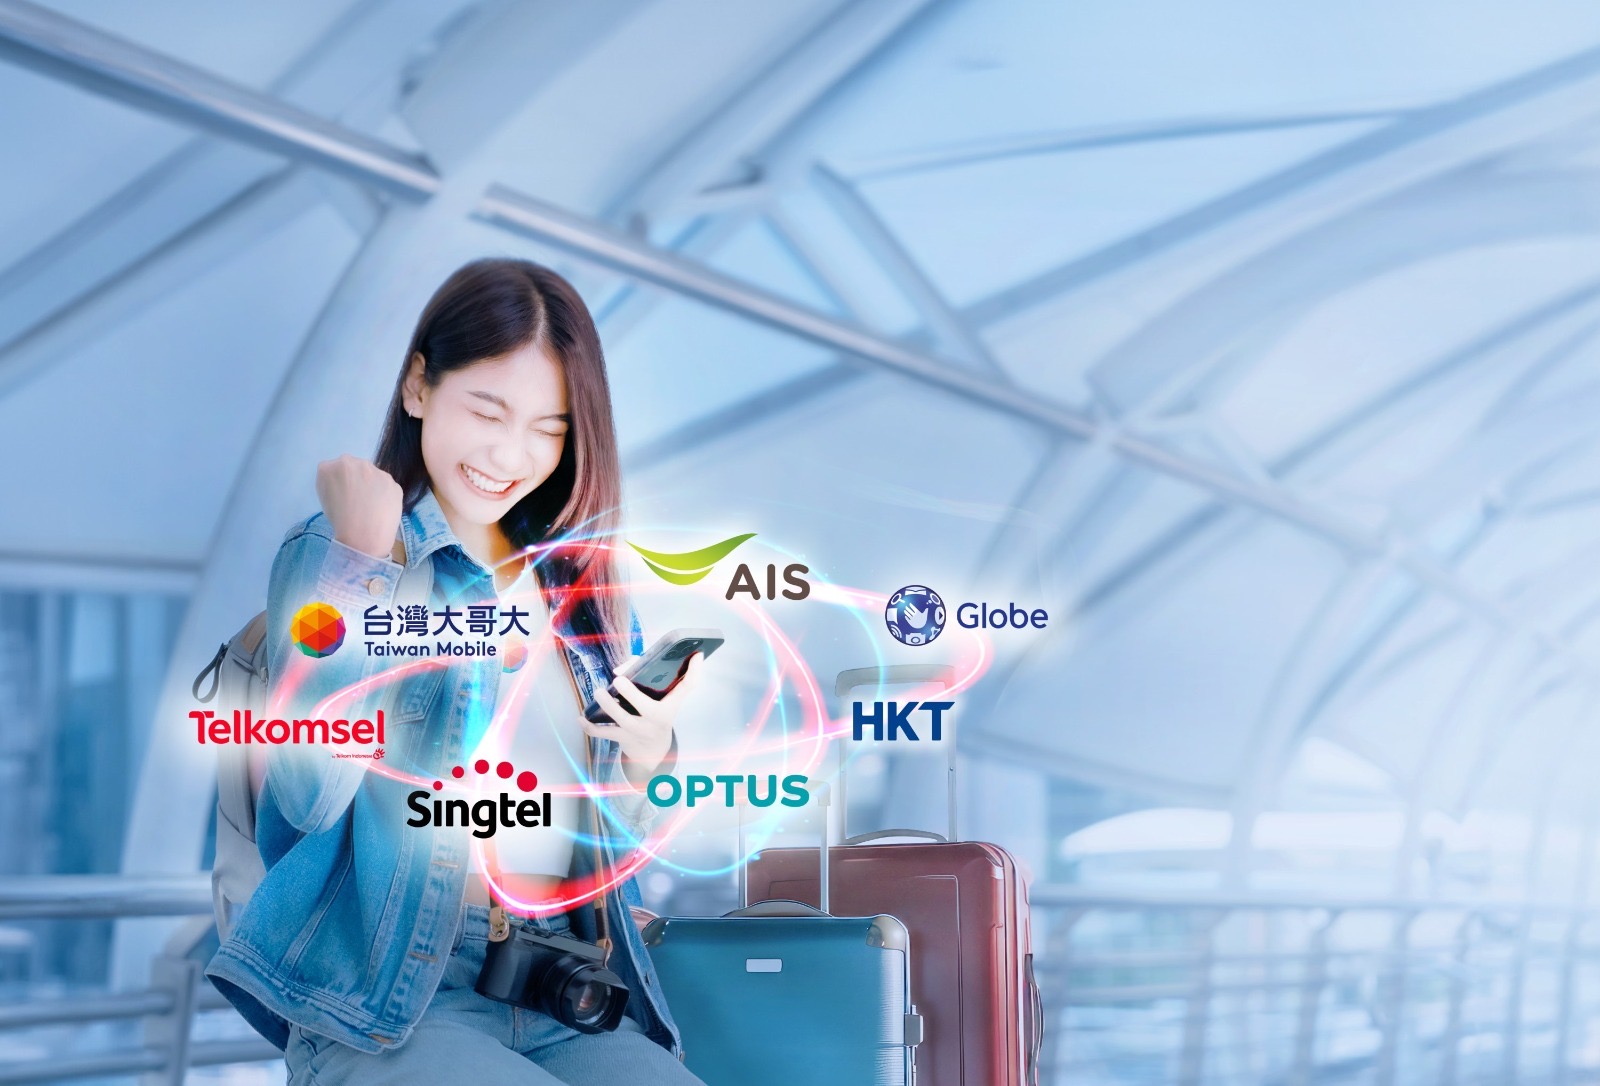 Pertama di Dunia, Singtel, AIS, Globe, HKT, Optus, Taiwan Mobile, dan Telkomsel Bekerja Sama Meluncurkan Program Hadiah Telekomunikasi Lintas Batas